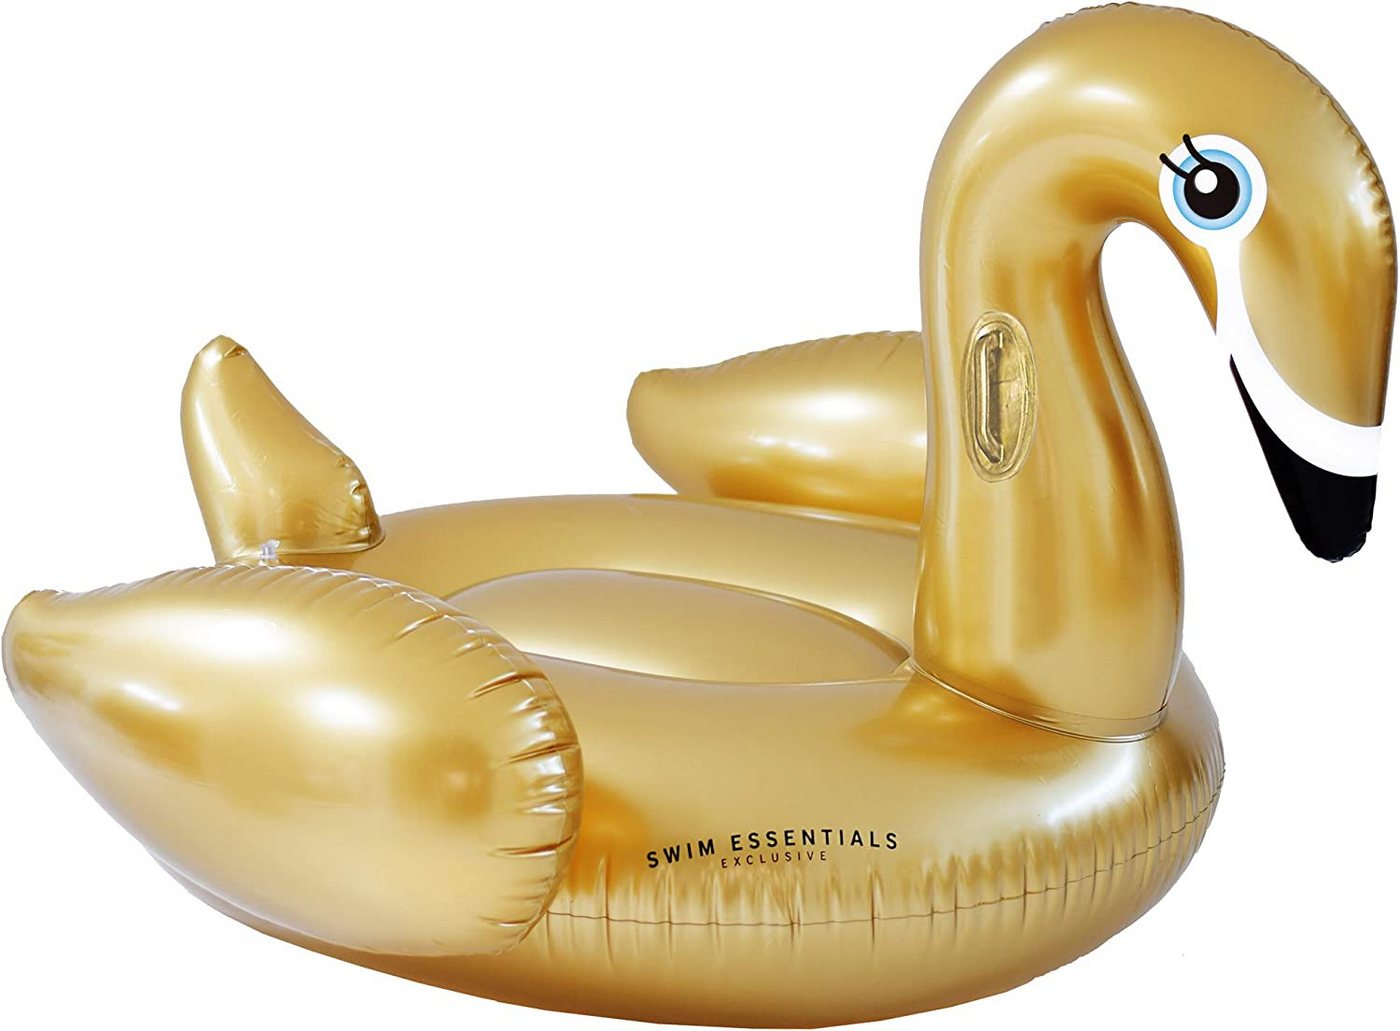 Swim Essentials Luftmatratze Swim Essentials Luxury Ride-on Schwan Gold 142x 137 x 97 cm von Swim Essentials